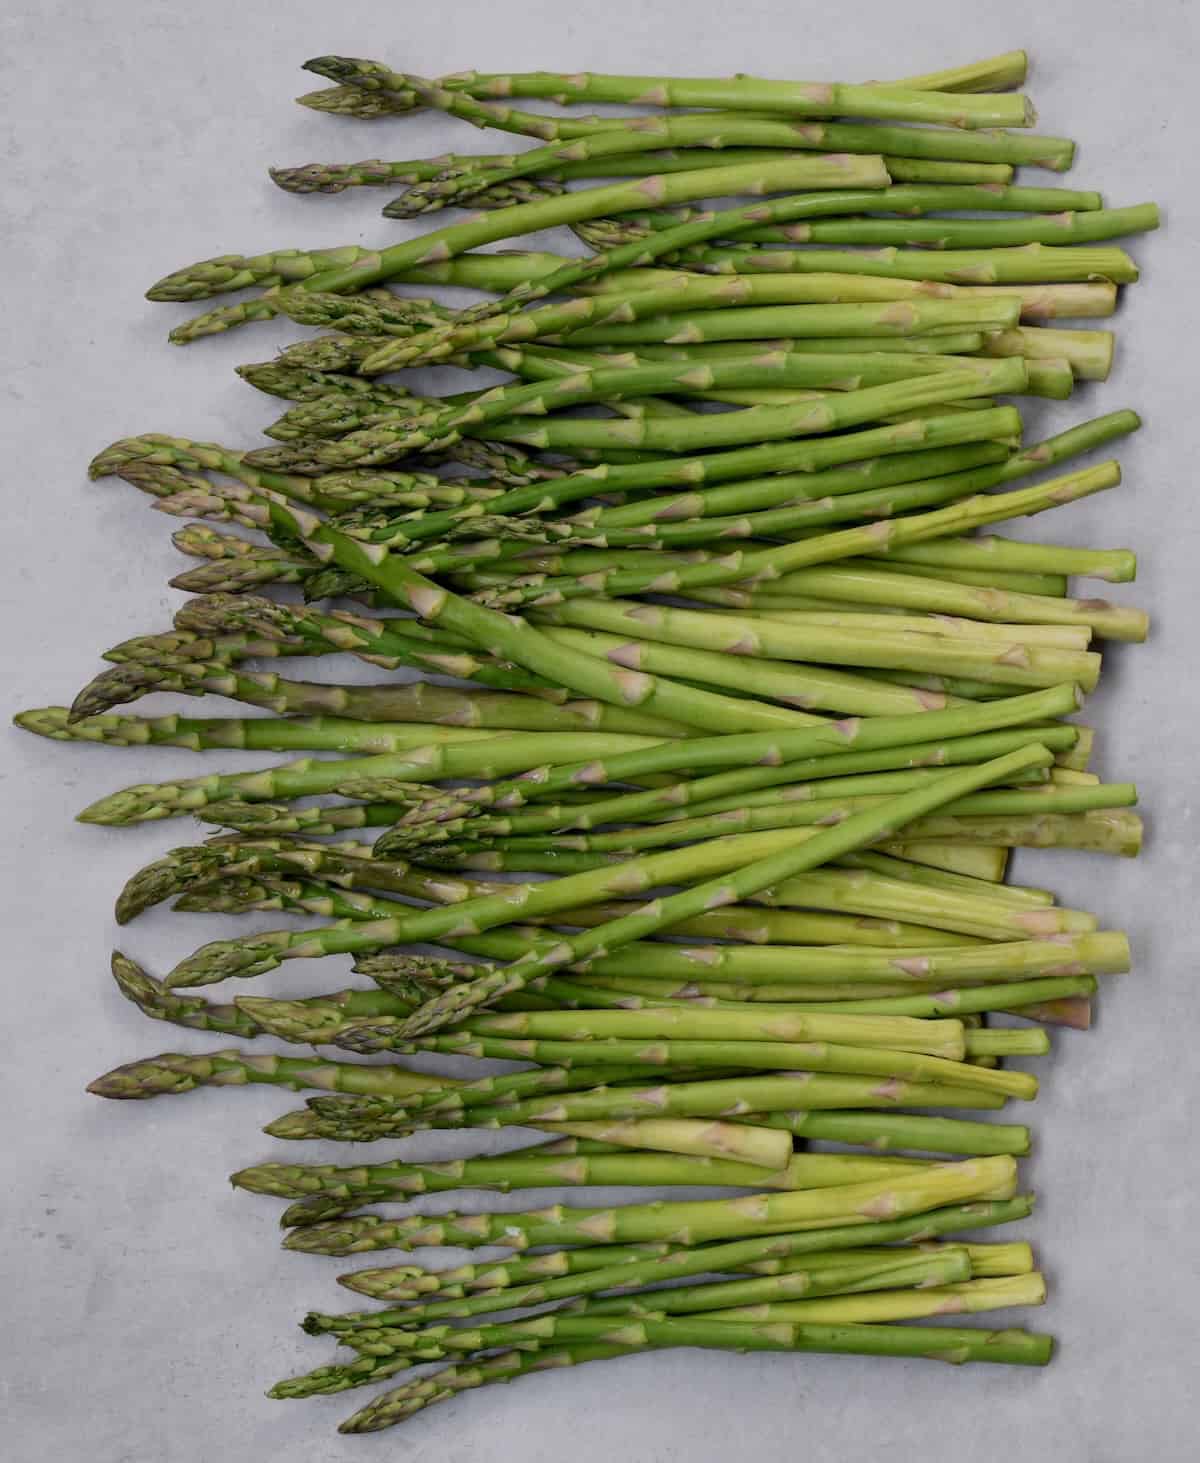 Fresh asparagus on a flat surface